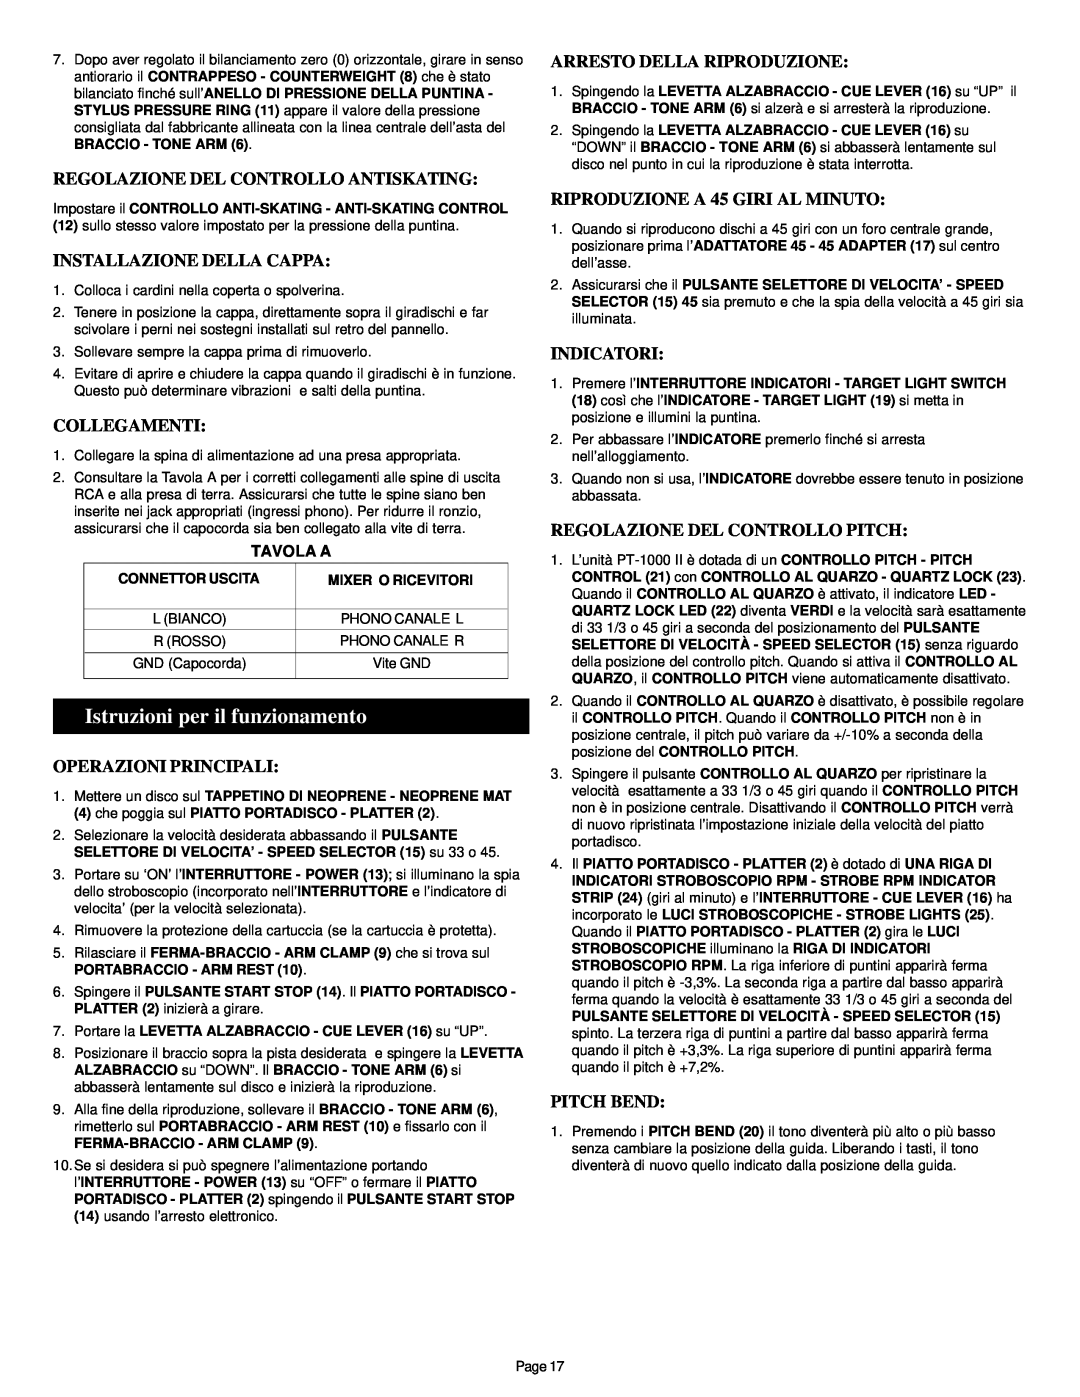 Gemini PT-1000 II manual Istruzioni per il funzionamento, Regolazione Del Controllo Antiskating, Installazione Della Cappa 